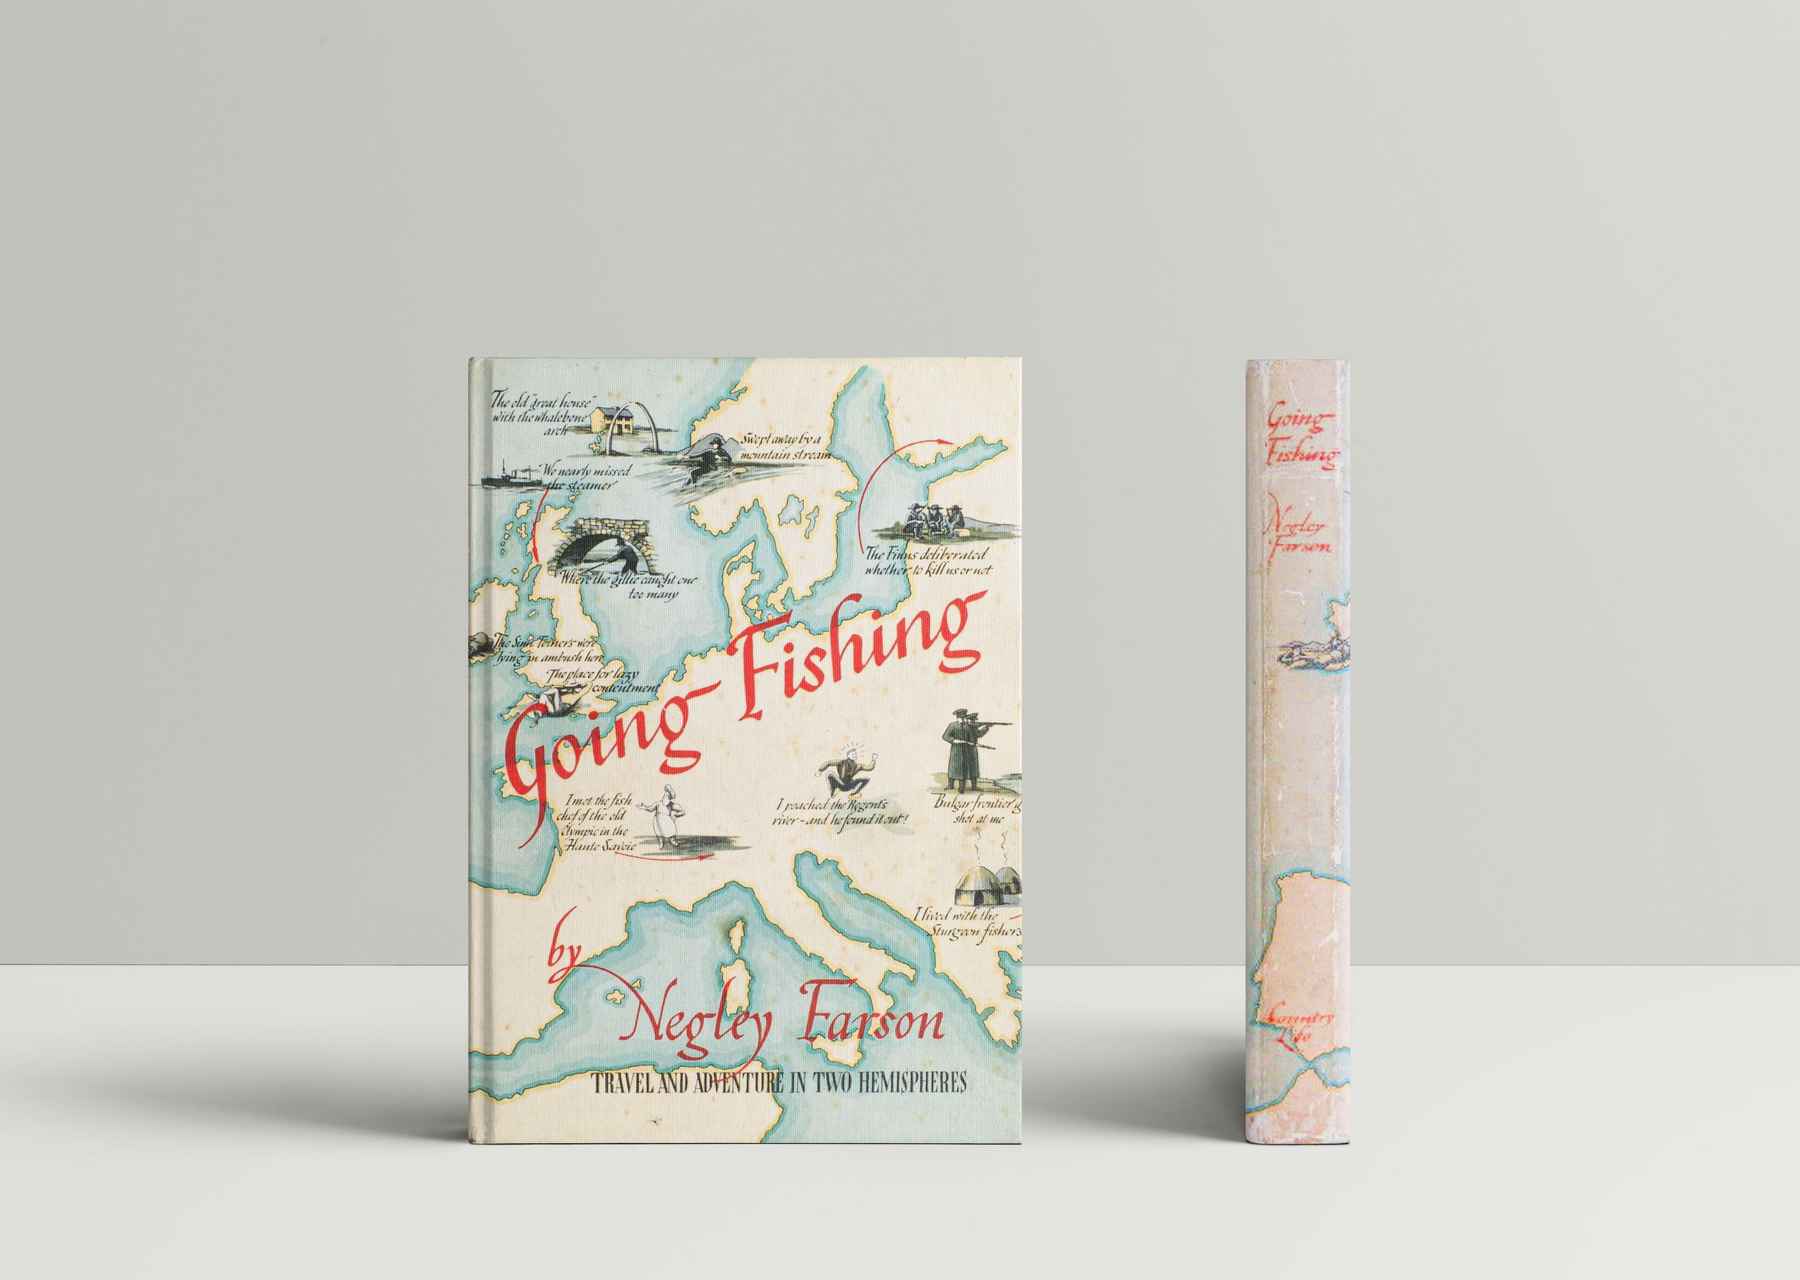 Summer reading: Hemingwhy?  Hatch Magazine - Fly Fishing, etc.